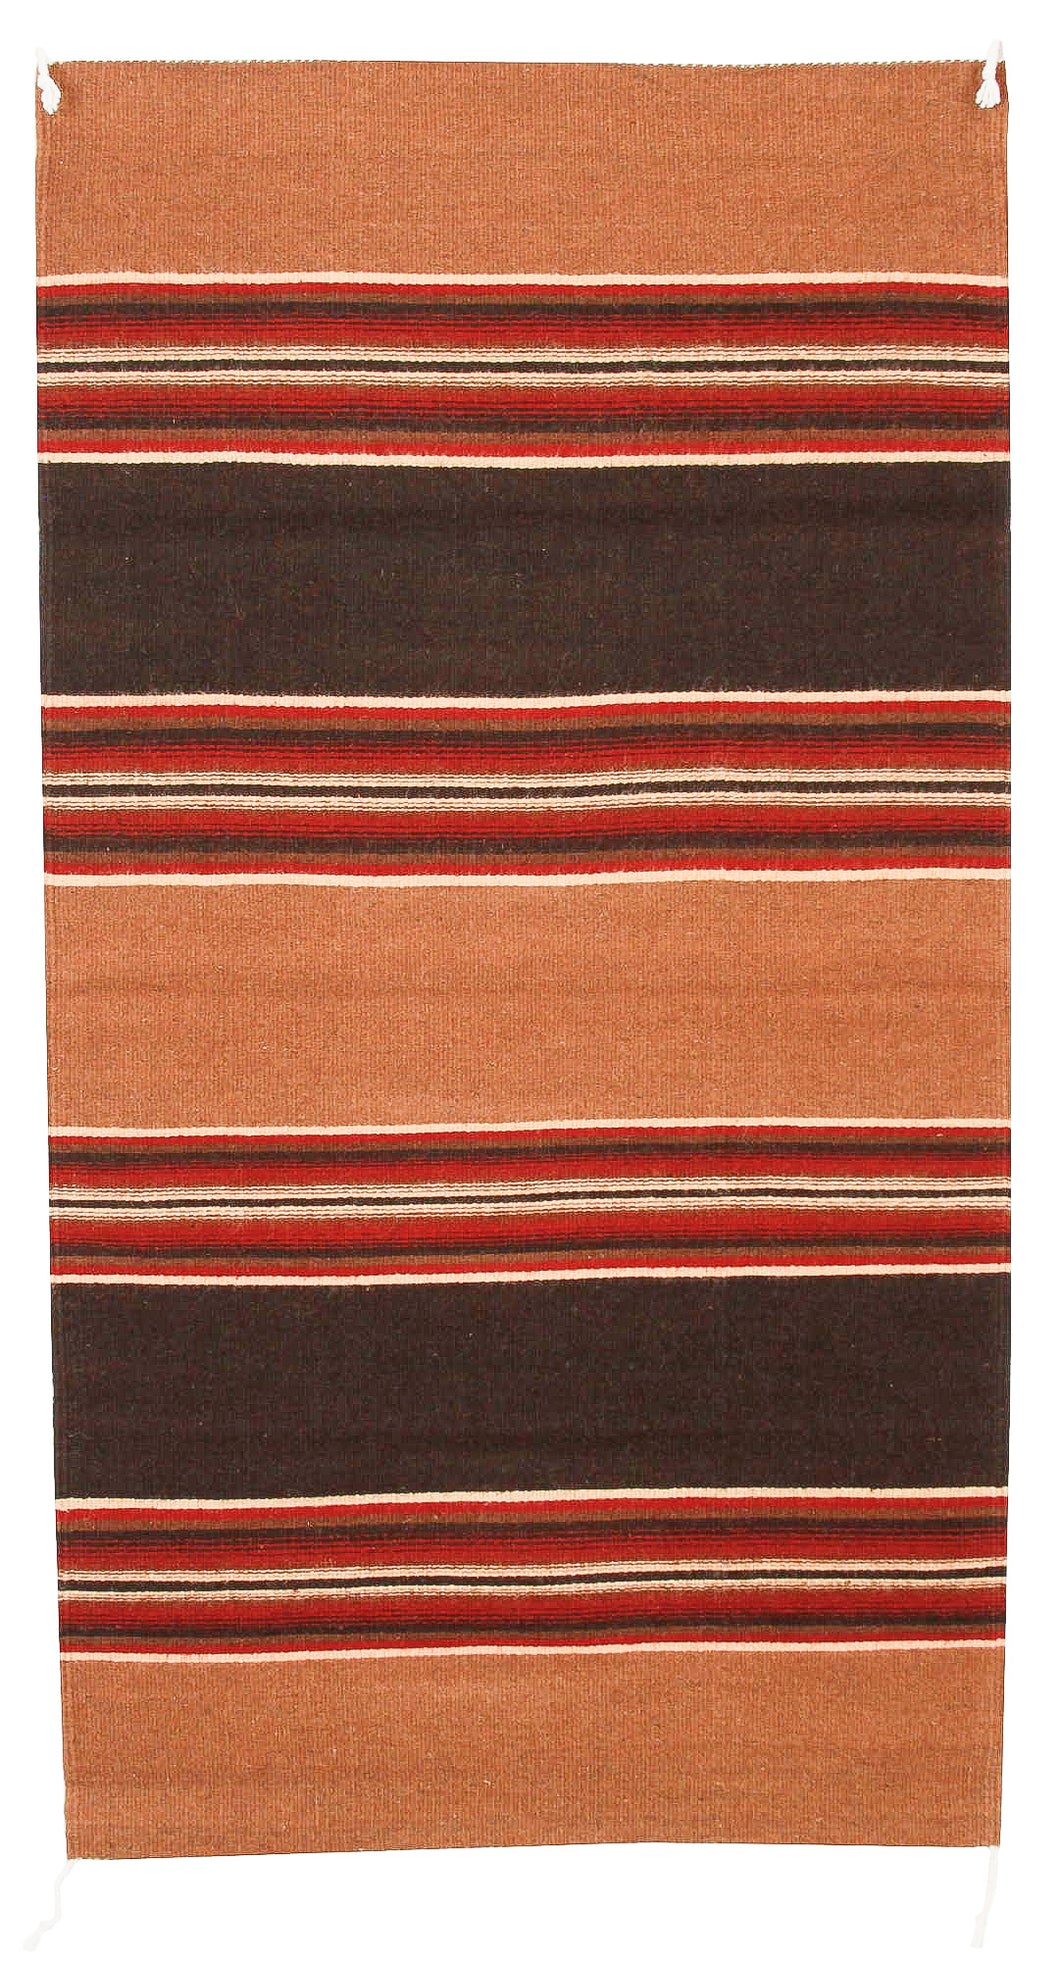 Handwoven Zapotec Rug - Cintas Espanola Wool Oaxacan Textile